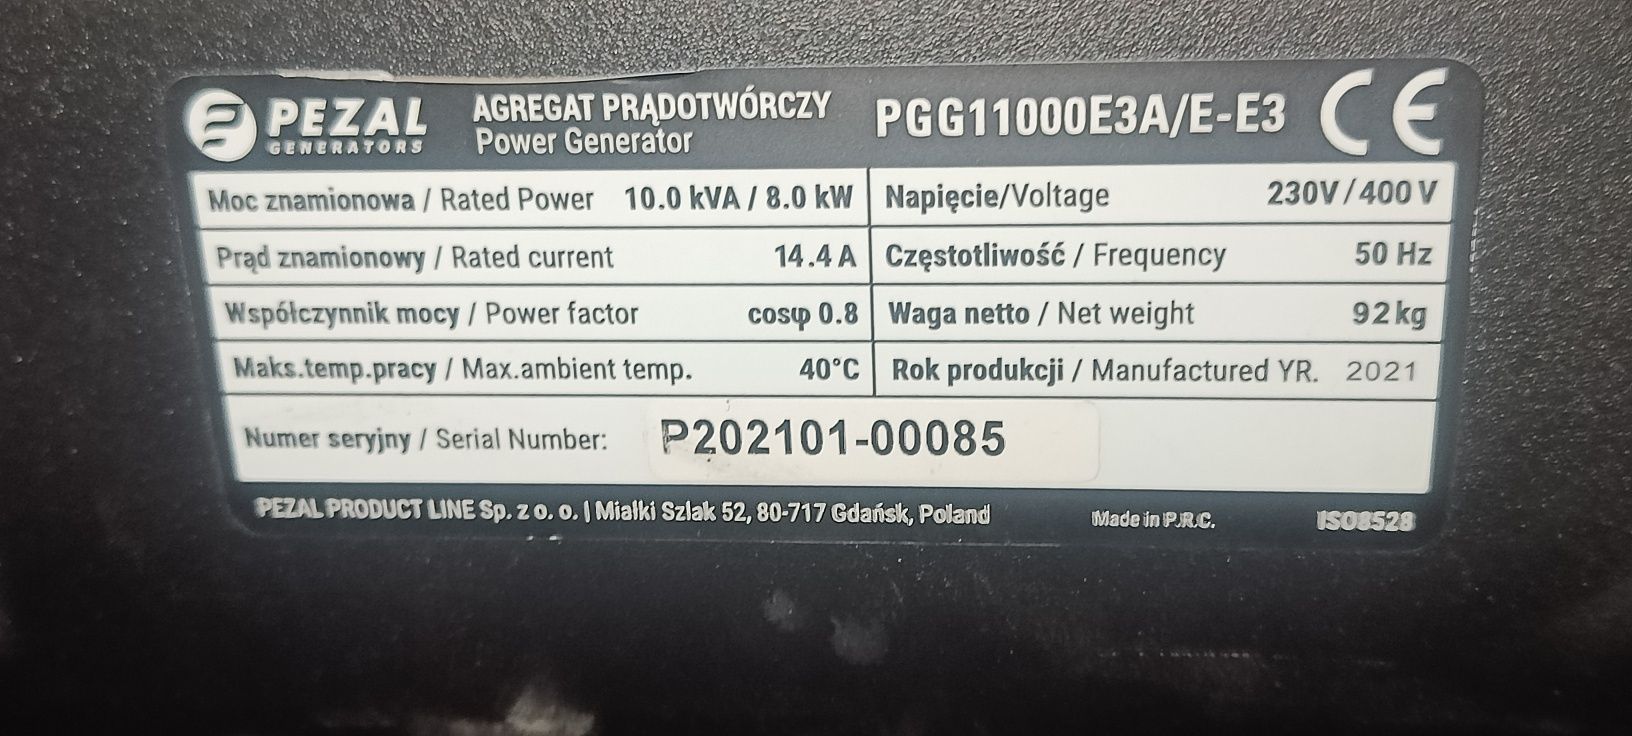 Agregat Prądotwórczy PEZAL PGG11000E3A/E-E3 8kW